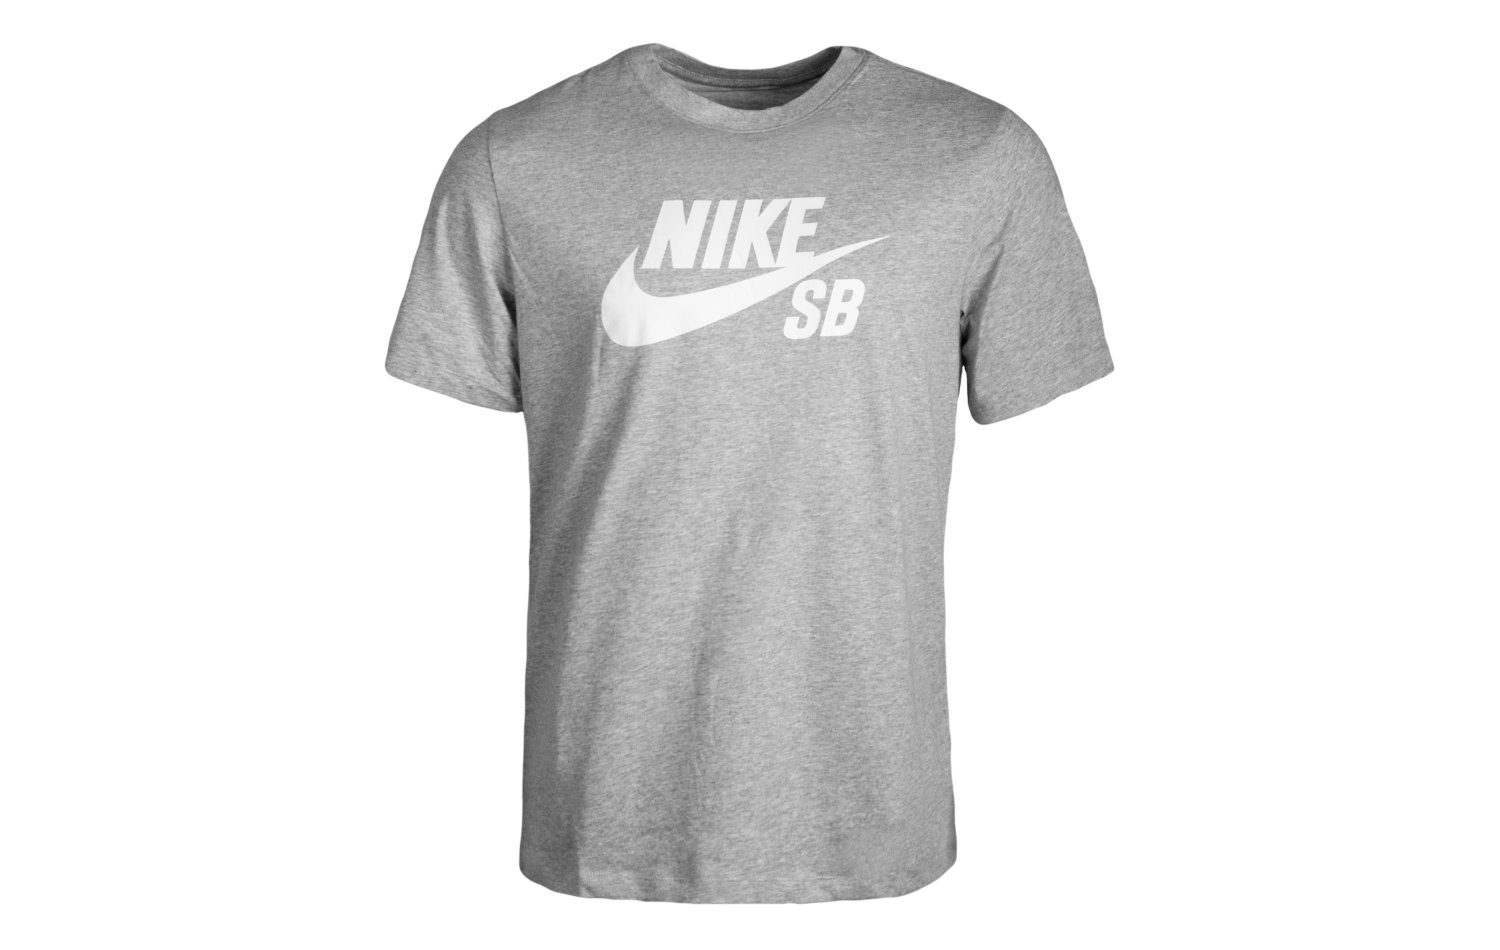 Nike SB Dri-fit S/S (AR4209-063)